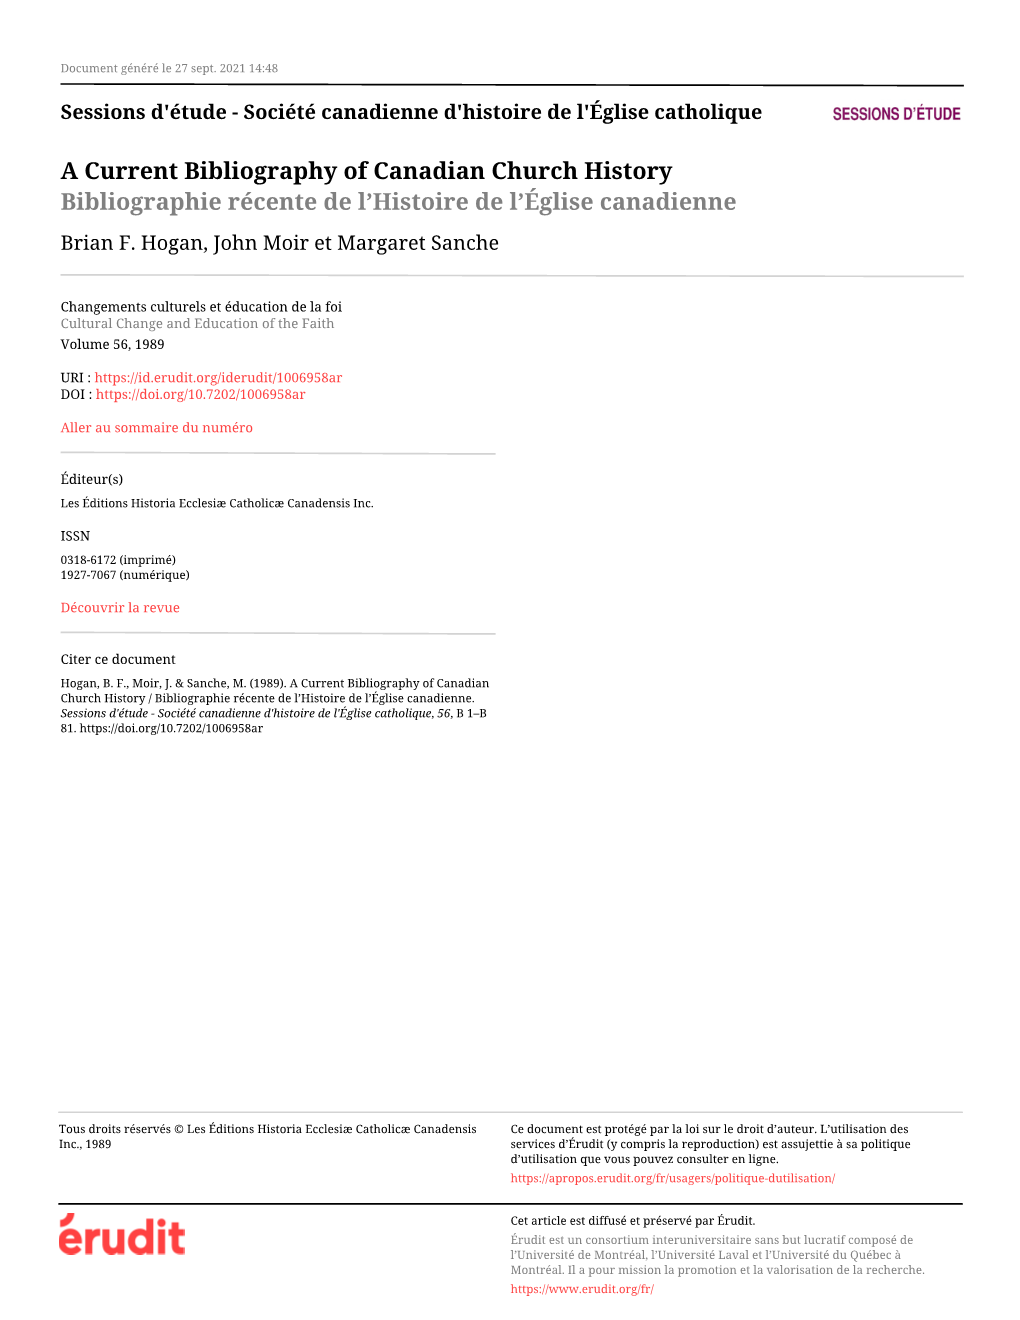 Société Canadienne D'histoire De L'église Catholique